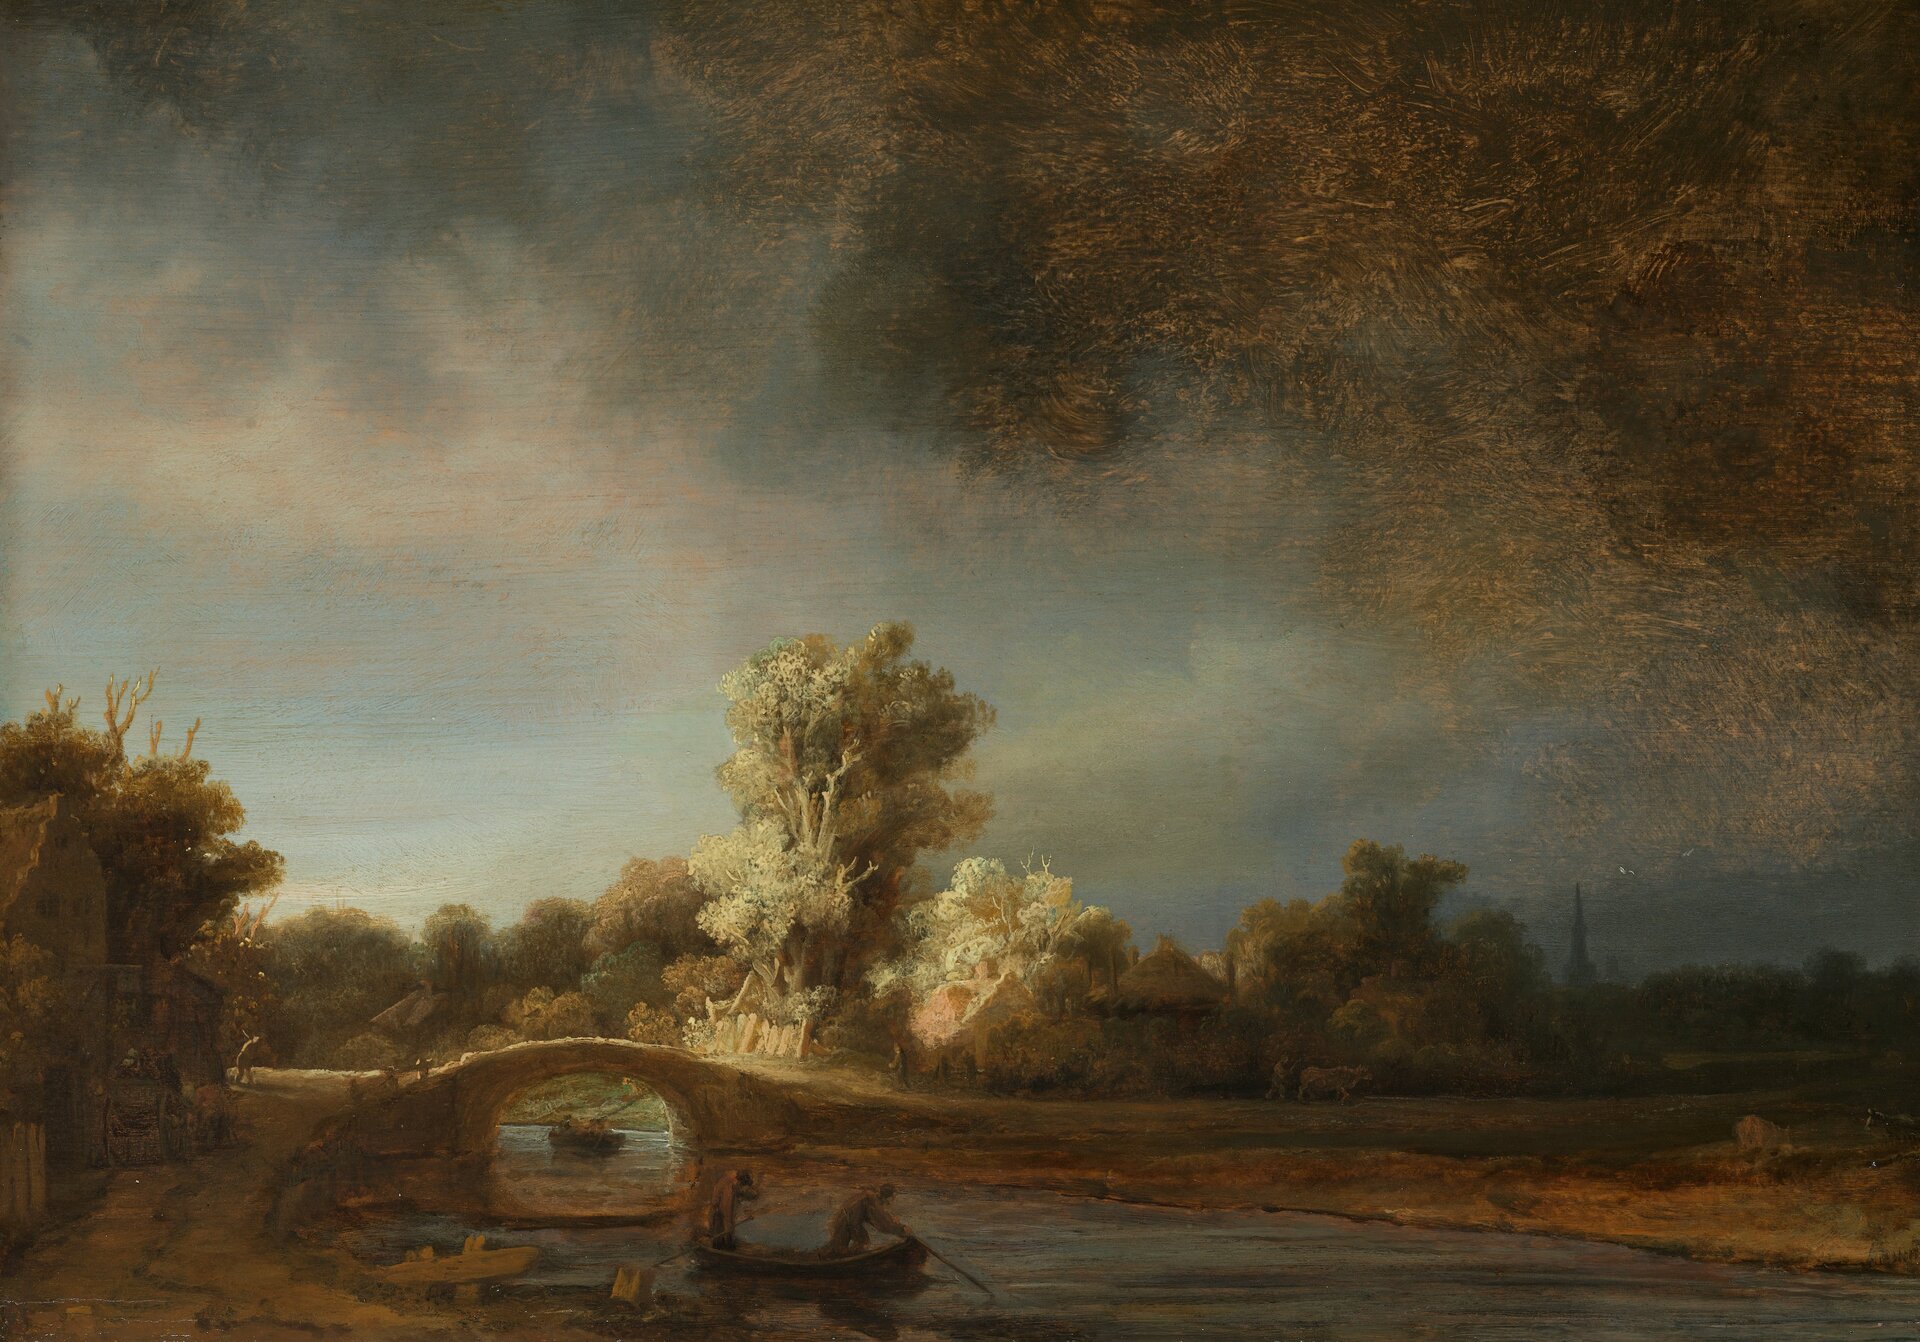 Ilustracja przedstawia obraz „Pejzaż z kamiennym mostem” autorstwa Rembrandta van Rijnna. Dzieło ukazuje krajobraz z rzeką i mostem. Nad pejzażem góruje ciężkie, mroczne niebo z ciemną chmurą po prawej stronie obrazu. Na pierwszym planie znajduje się łódka z dwoma postaciami, unosząca się na wodzie. Dalej, namalowany jest mostek, za którym wyłaniają się z mrocznego pejzażu, ciepło oświetlone zabudowania małych domków pośród drzew. Artysta przy pomocy światła buduje nastrój obrazu. Pejzaż utrzymany jest w wąskie, ciemnej tonacji kolorów. Dominują tutaj beże, ugry, zielenie i zbrudzone błękity. Dzieło wykonane jest w technice olejnej na dębowej desce.